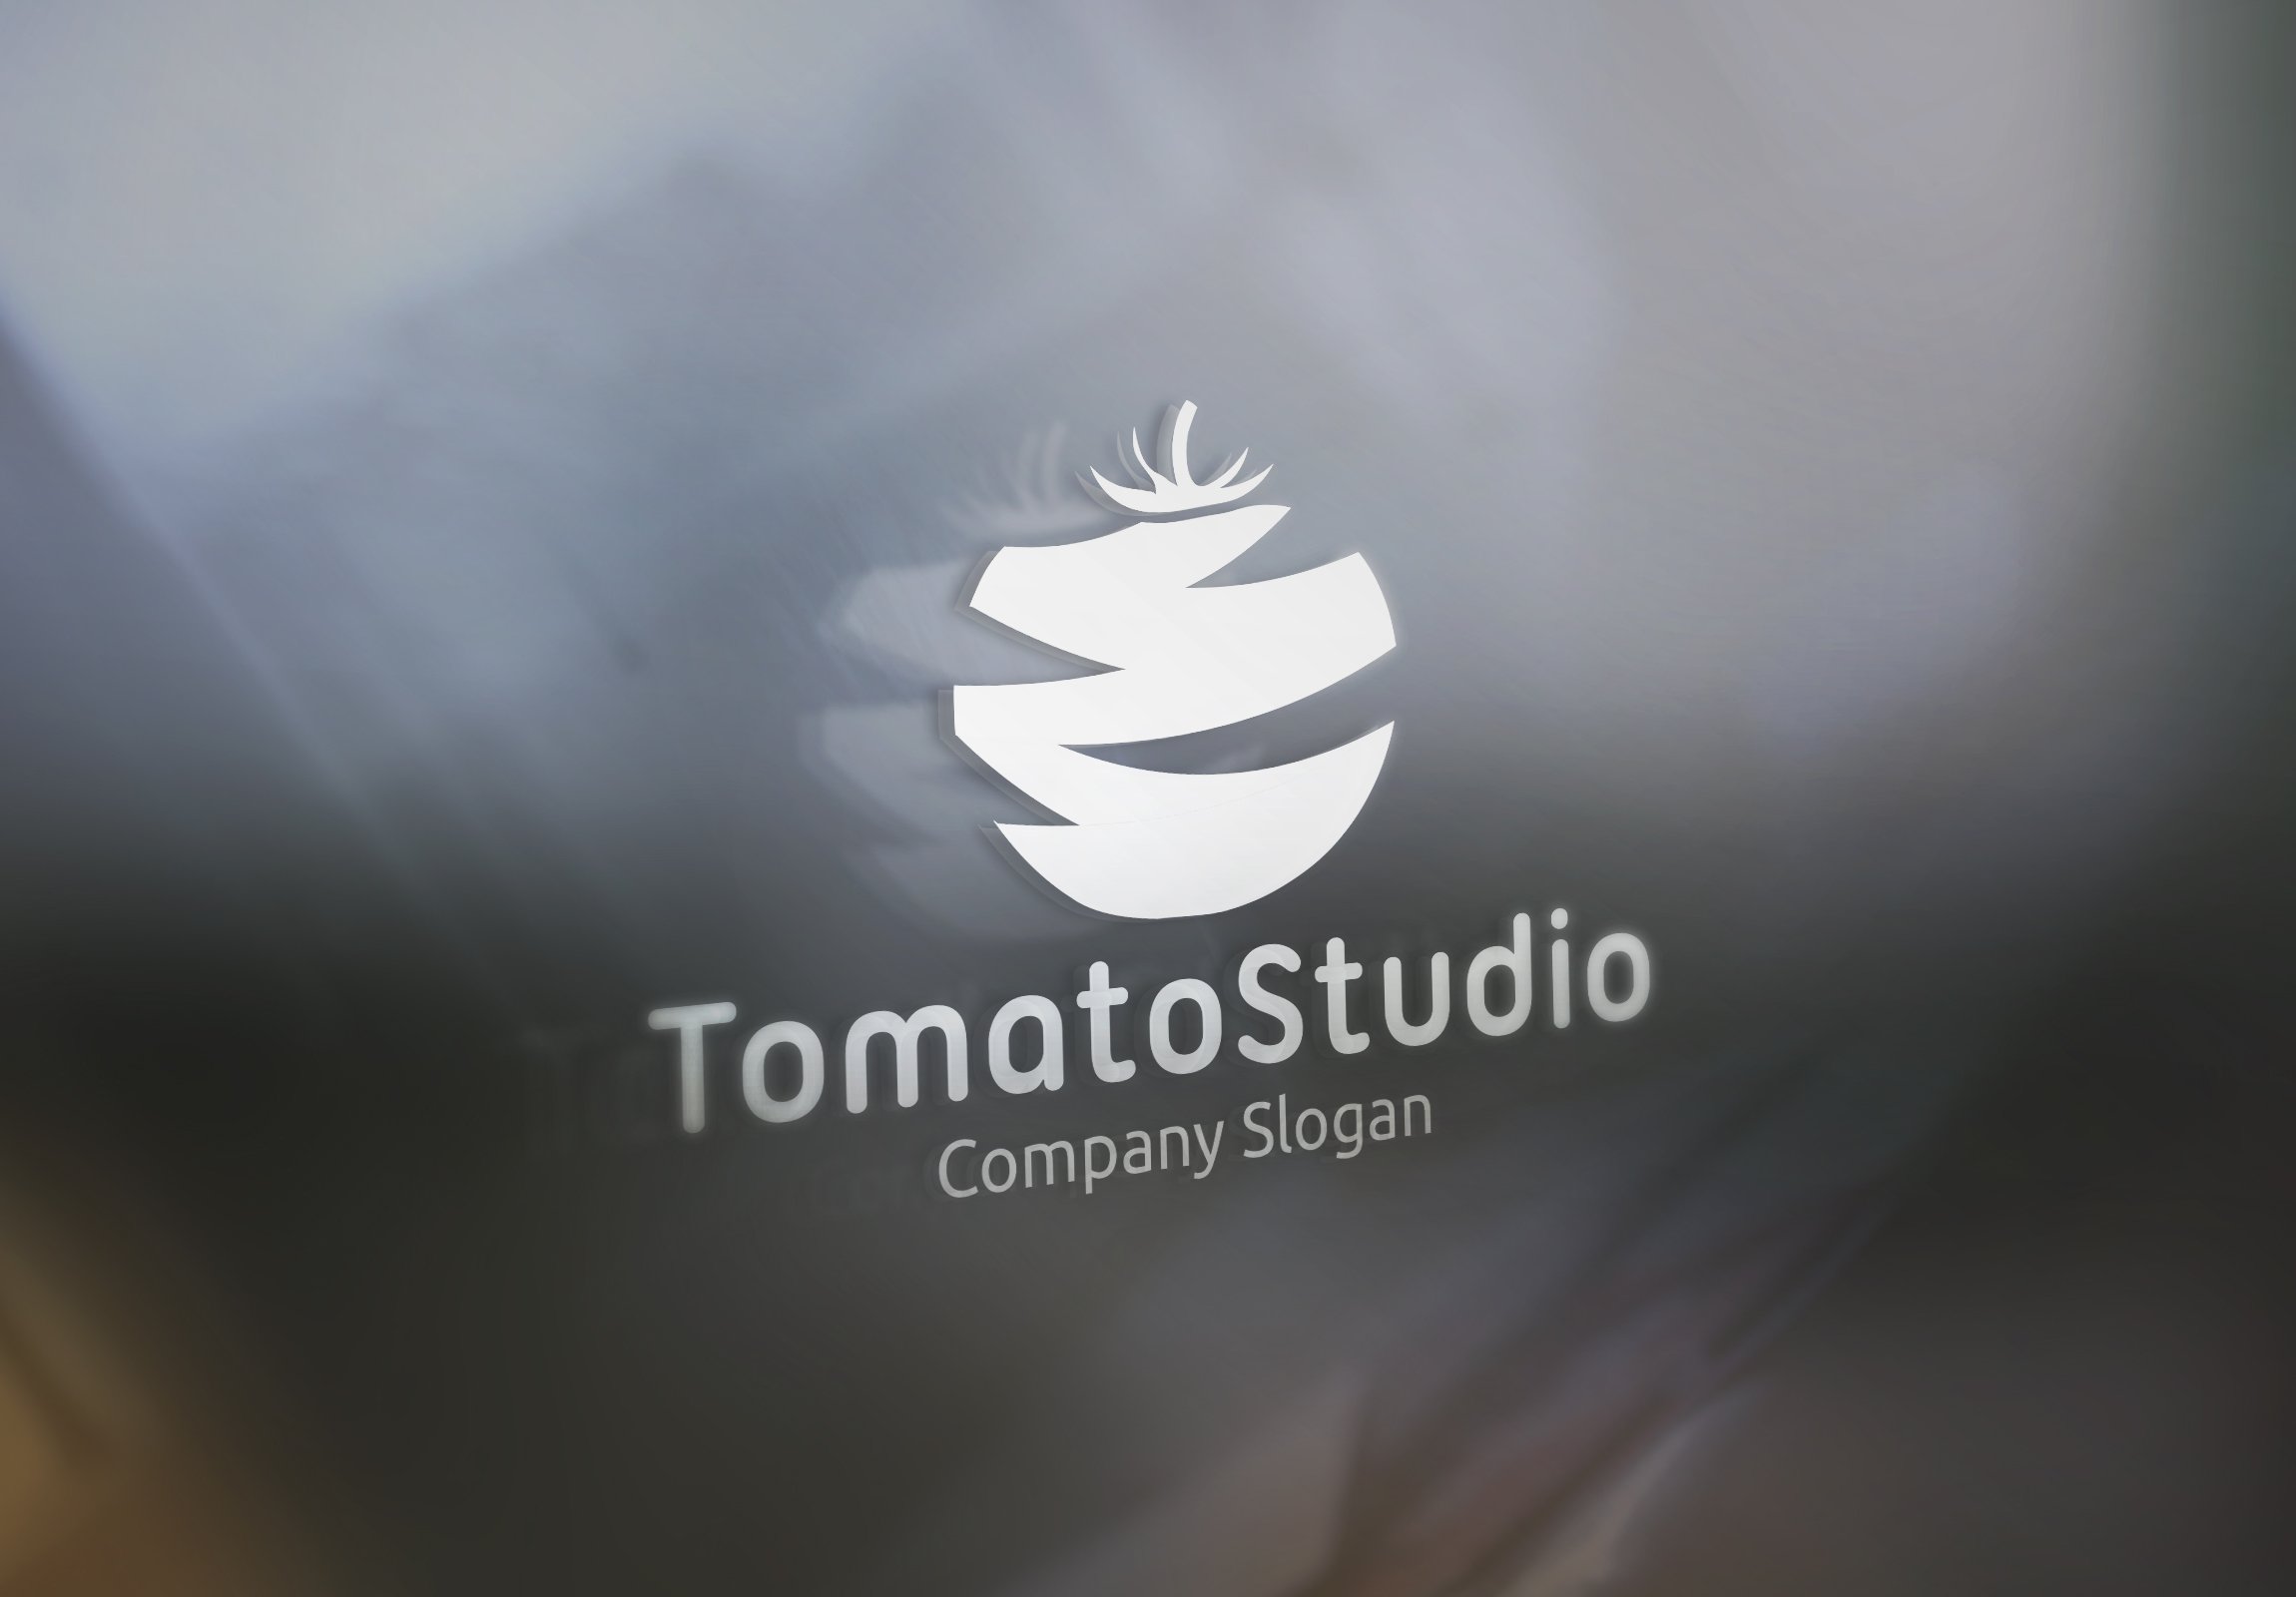 Tomato Studio Logos preview image.